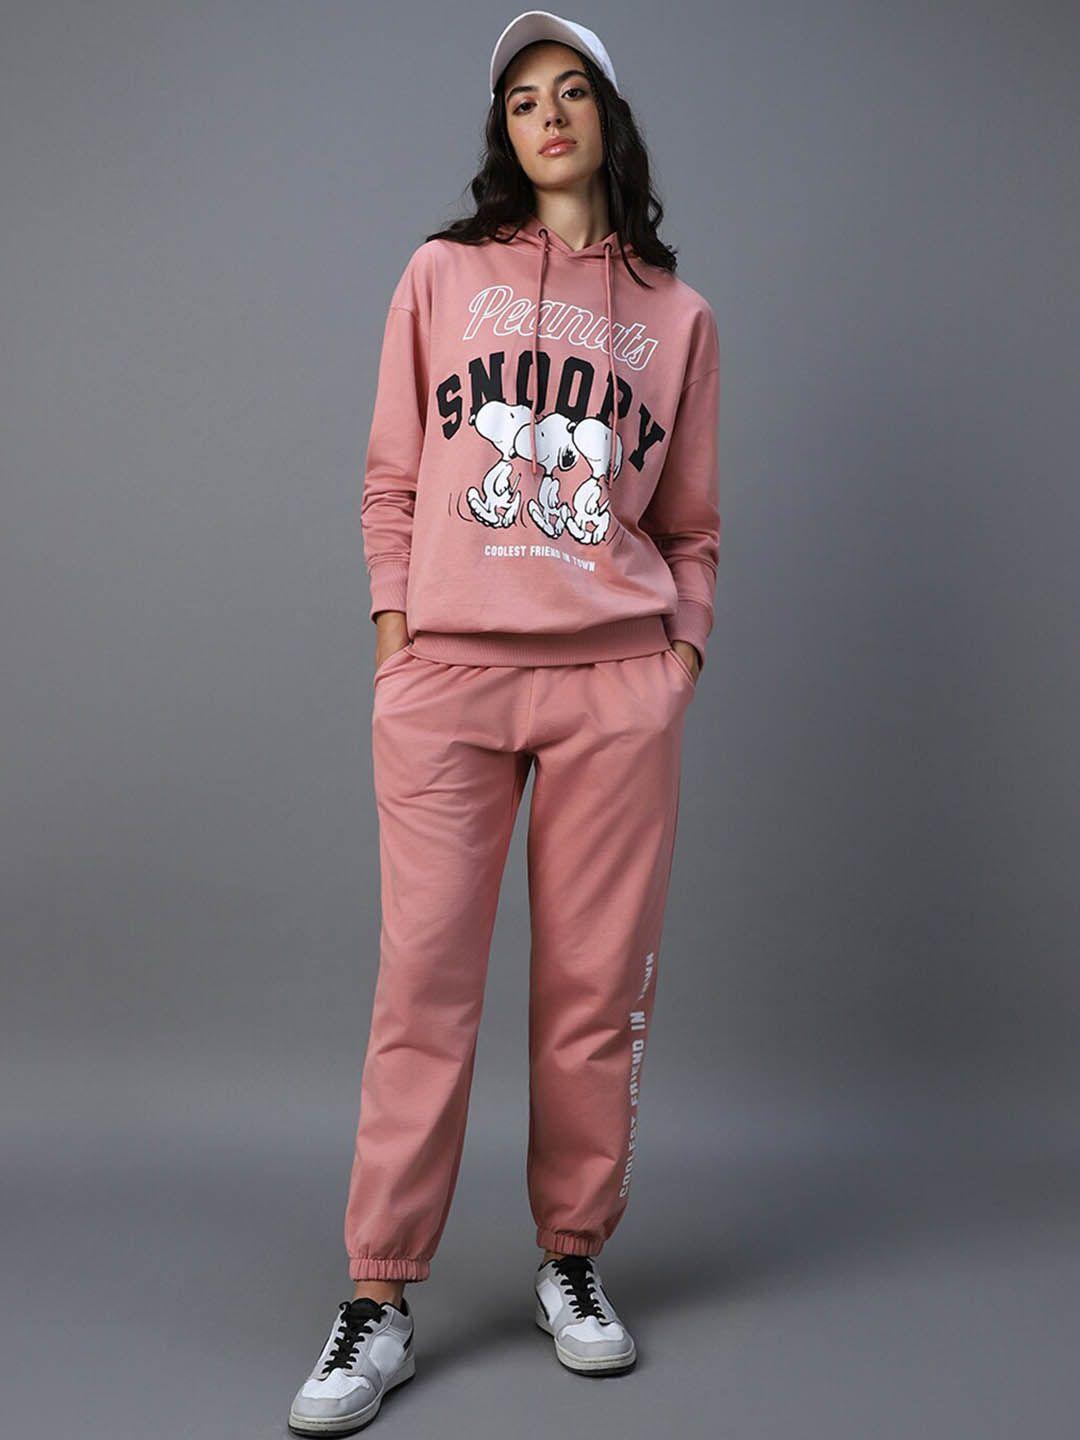 bewakoof pink snoopy printed hooded long sleeves sweatshirt with joggers